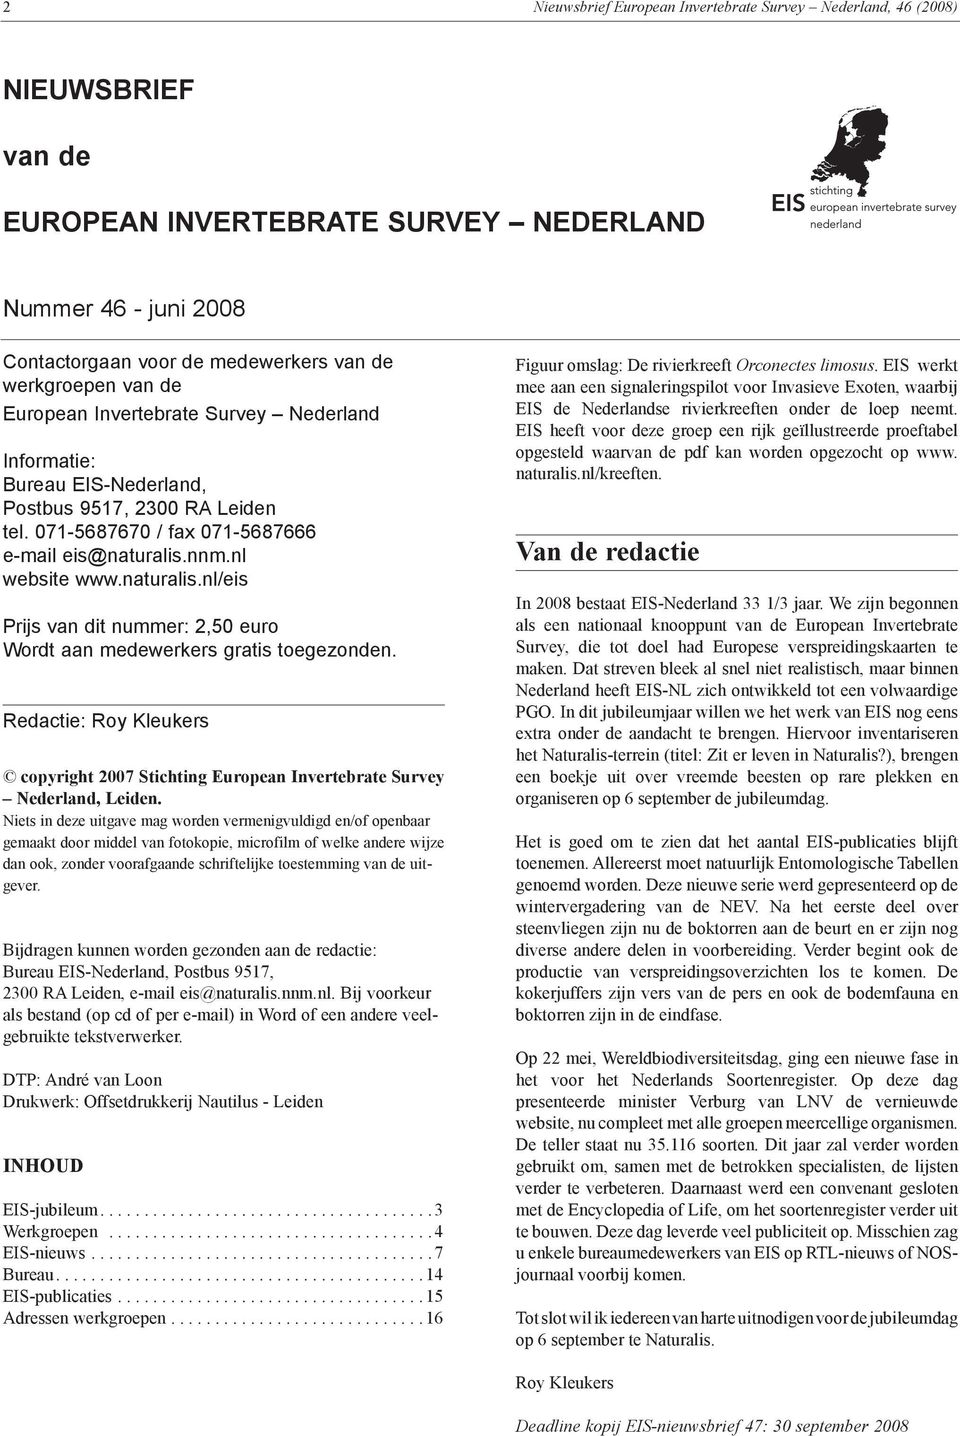 nnm.nl website www.naturalis.nl/eis Prijs van dit nummer: 2,50 euro Wordt aan medewerkers gratis toegezonden.